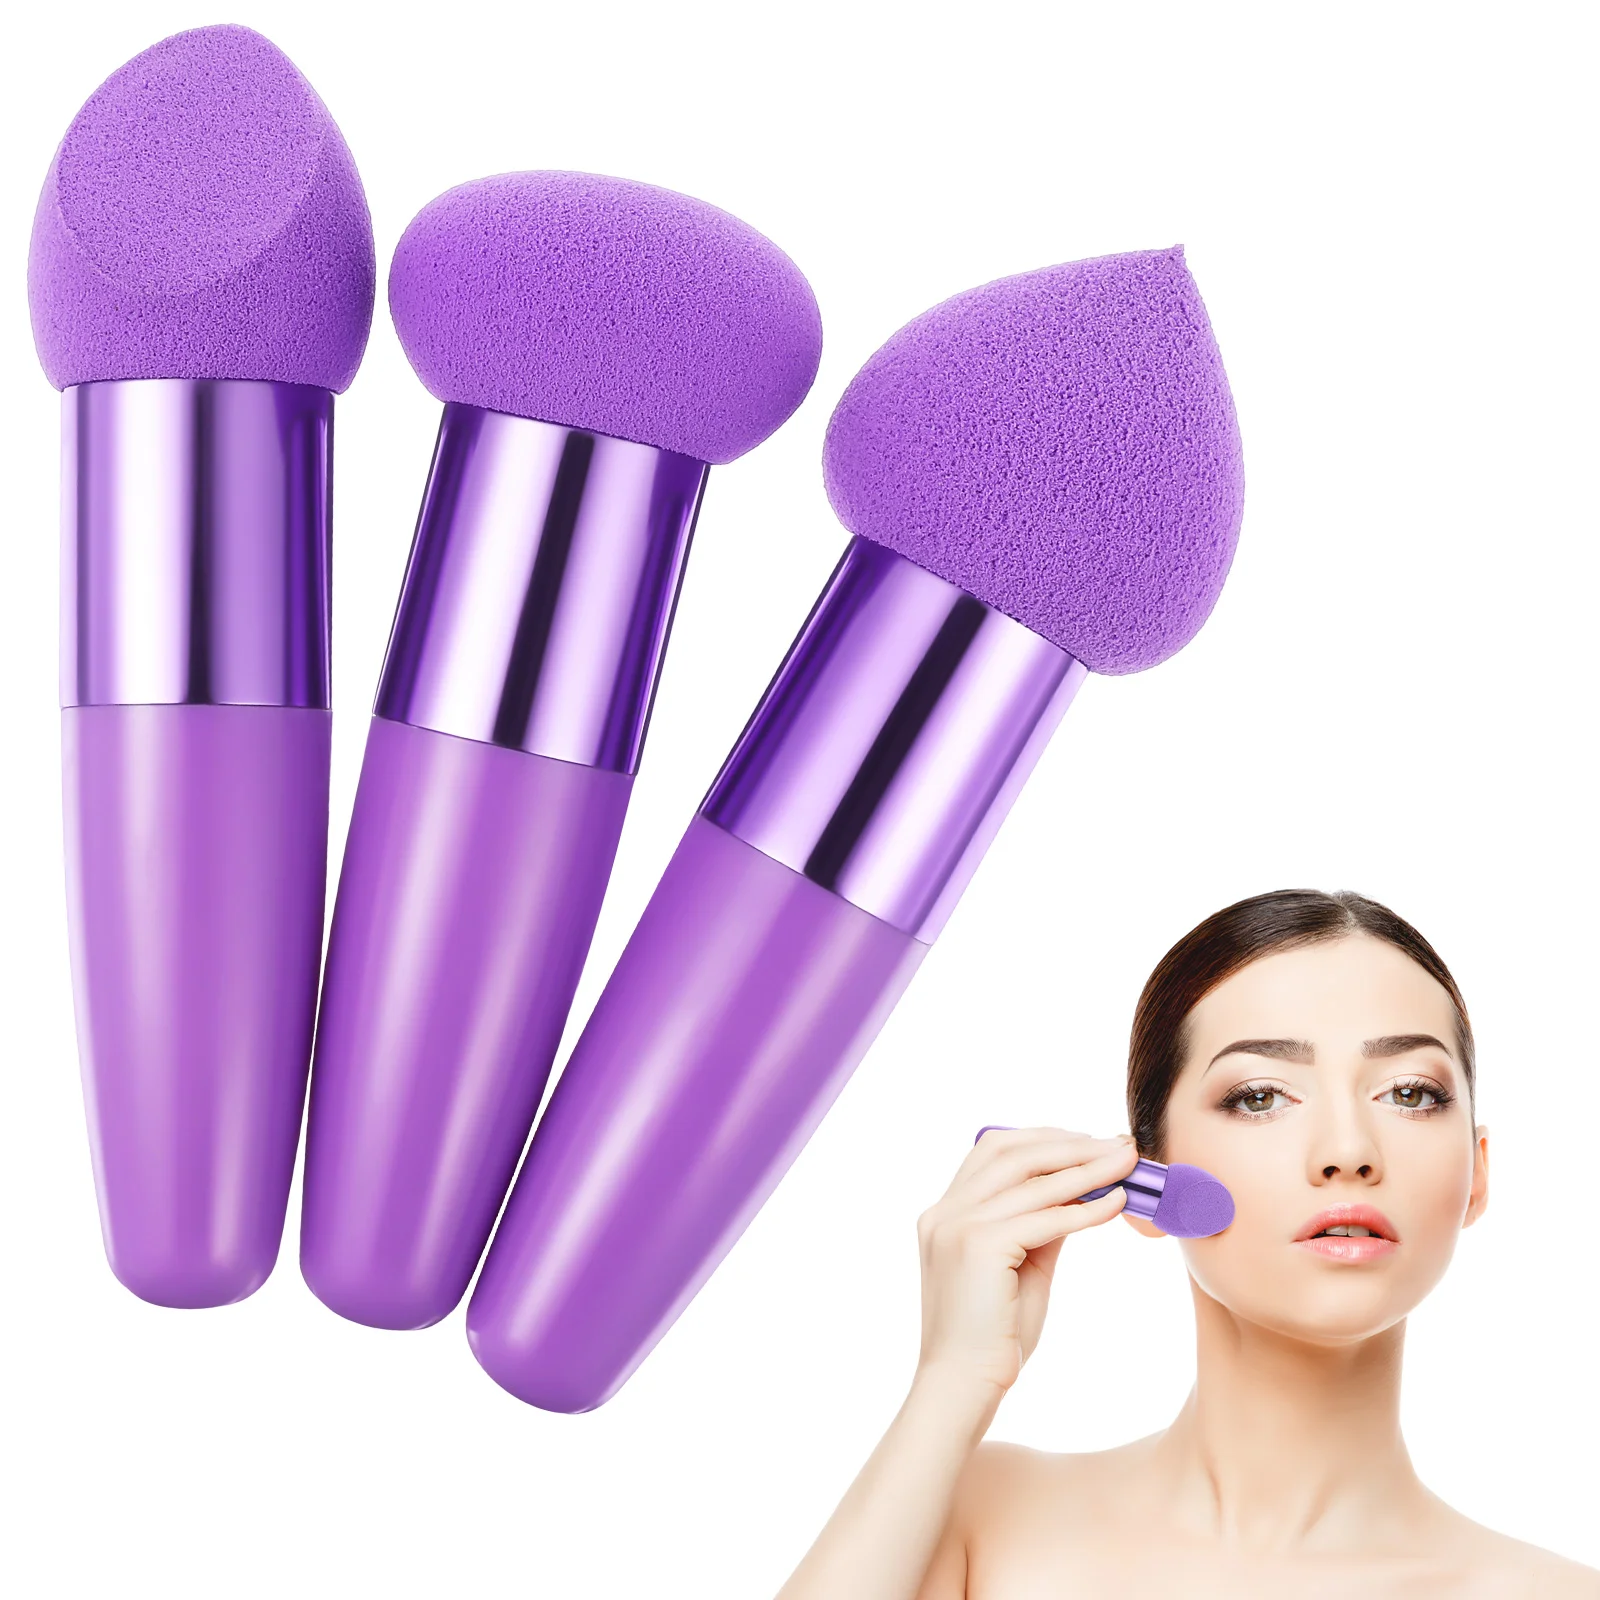 

3 Pcs Beauty Pen Makeup Sponge Brush Sponges Face Powder Puff Mix Handle Foundation Emulsion Blender